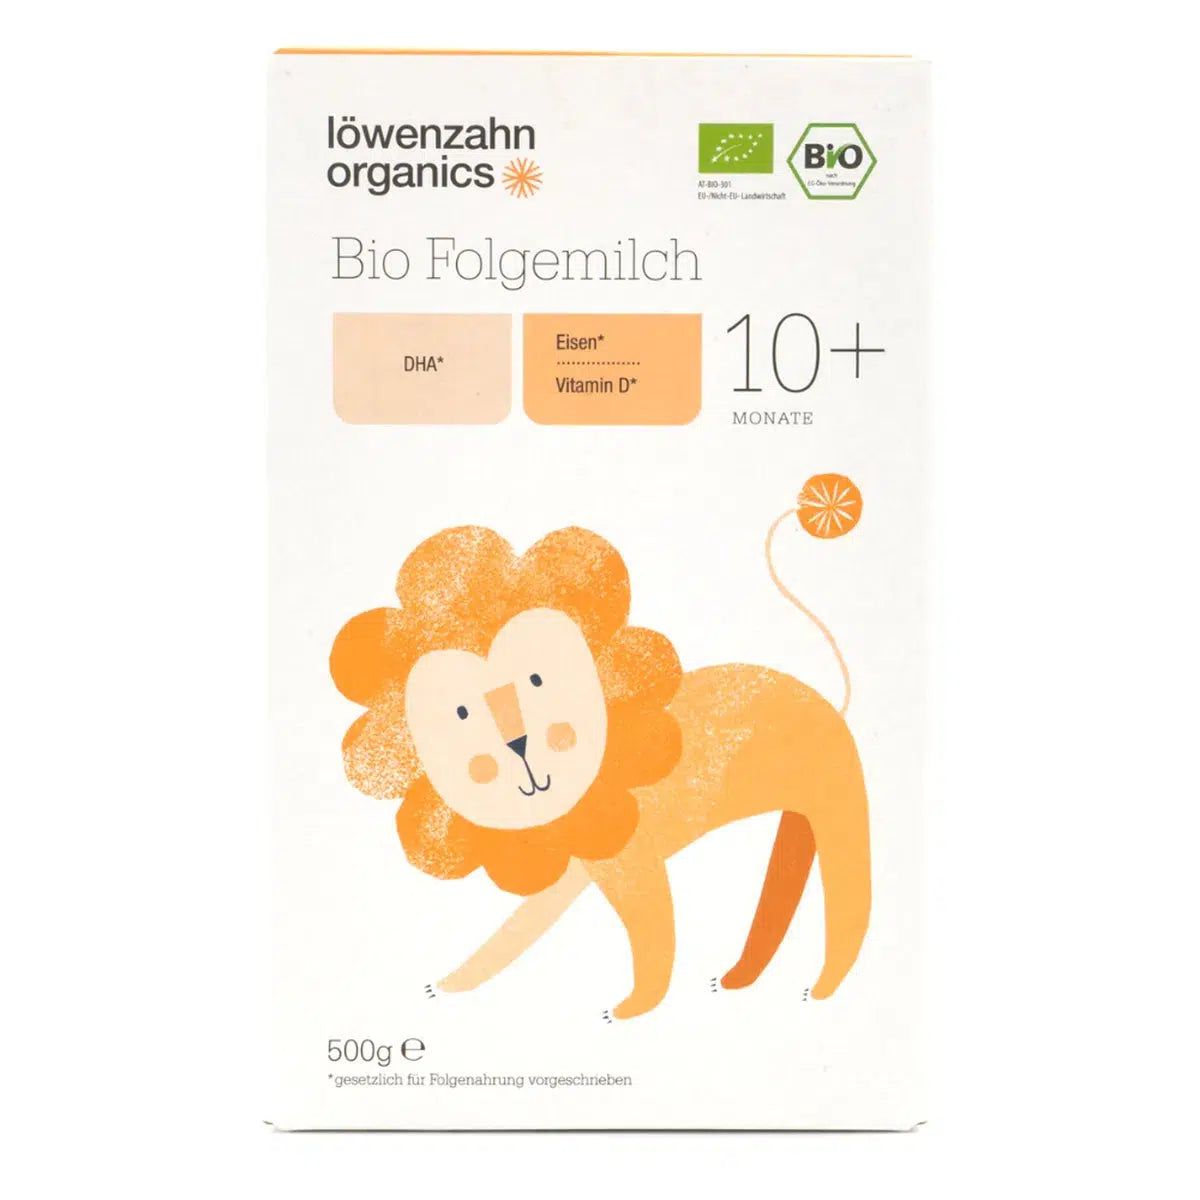 Löwenzahn Organics Stage 3 (10+ Months) Formula | Organic European Baby Formula